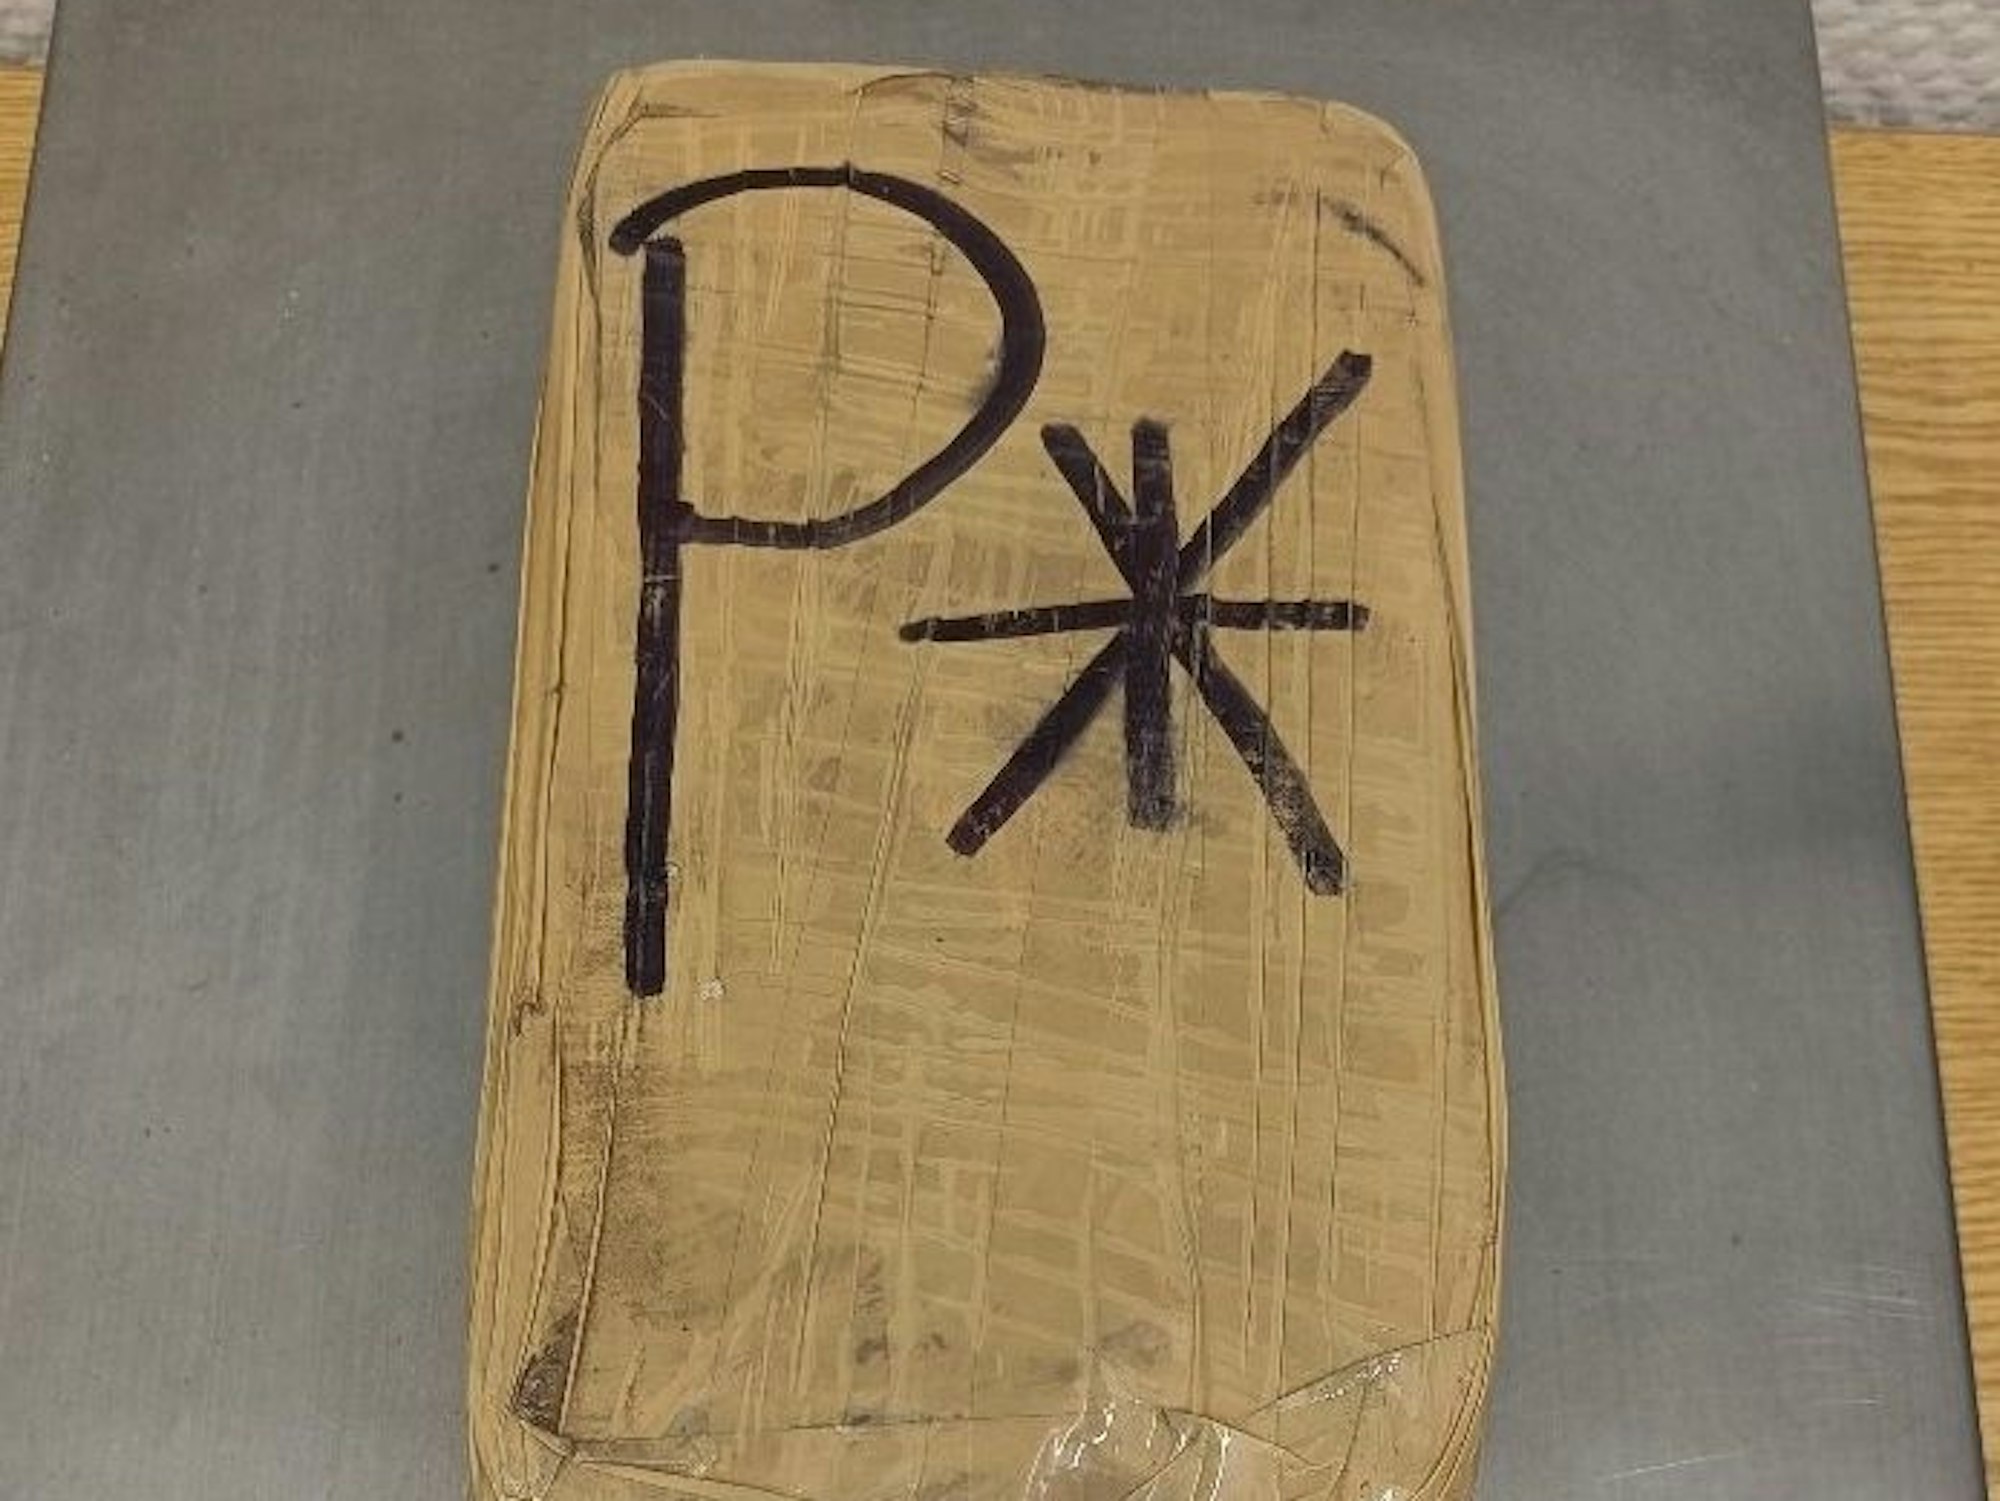 Das Foto der Bundespolizei zeigt ein Paket mit Kokain, das im Kofferraum eines Autos mit Düsseldorfer Kennzeichen gefunden wurde.